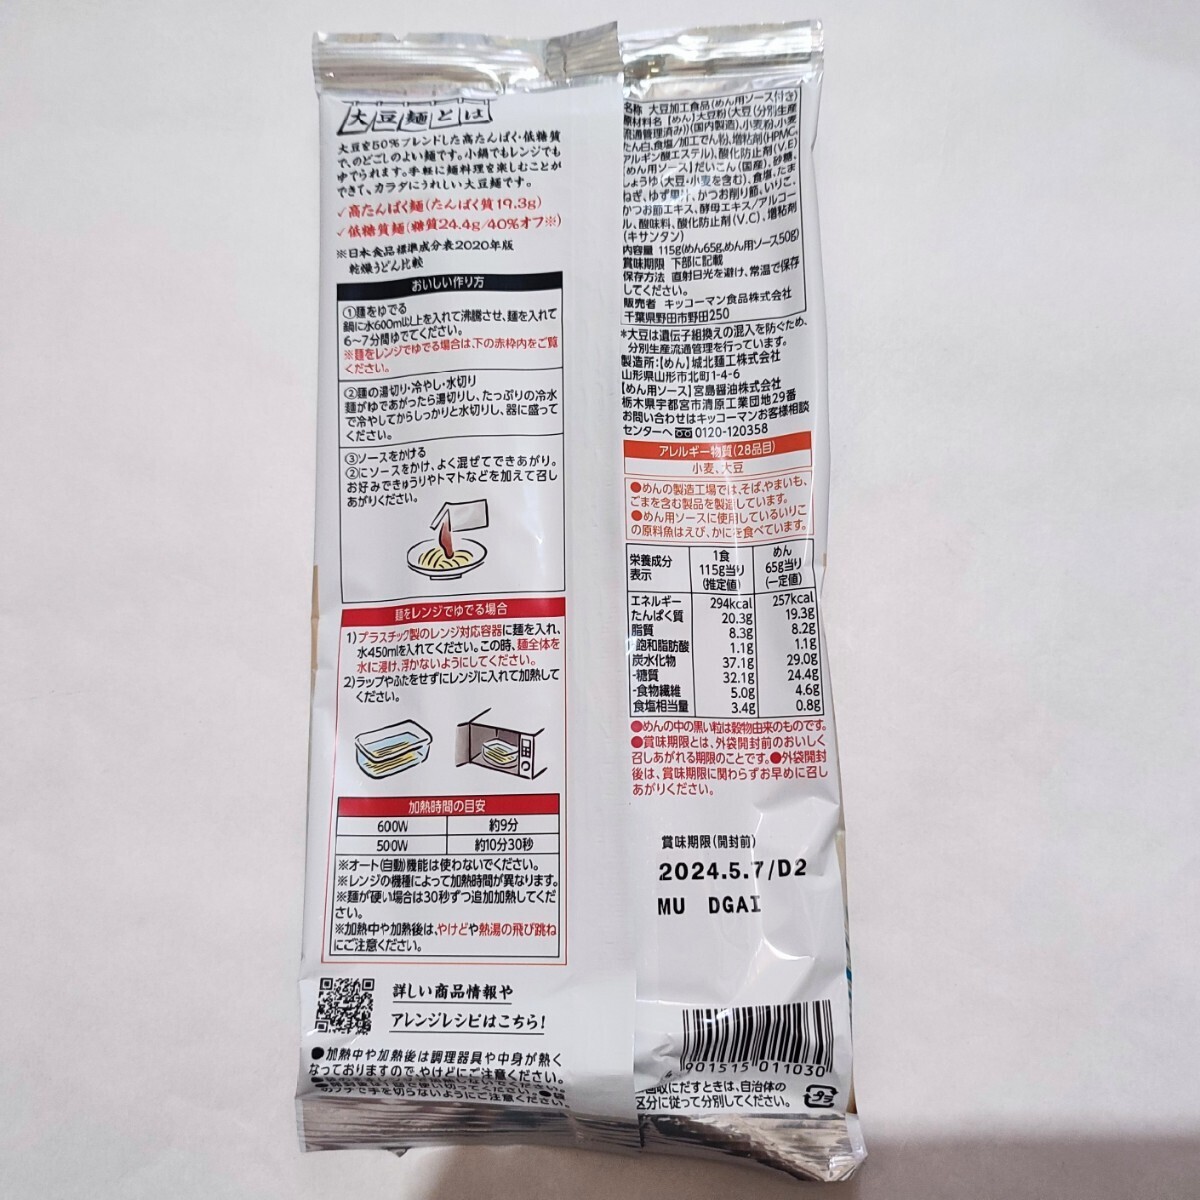 キッコーマン 大豆麺 ゆずおろし 高タンパク 低糖質 ダイエット ロカボ ソイプロテイン パスタ 低カロリー ダイエット食品 レトルト 減量の画像3